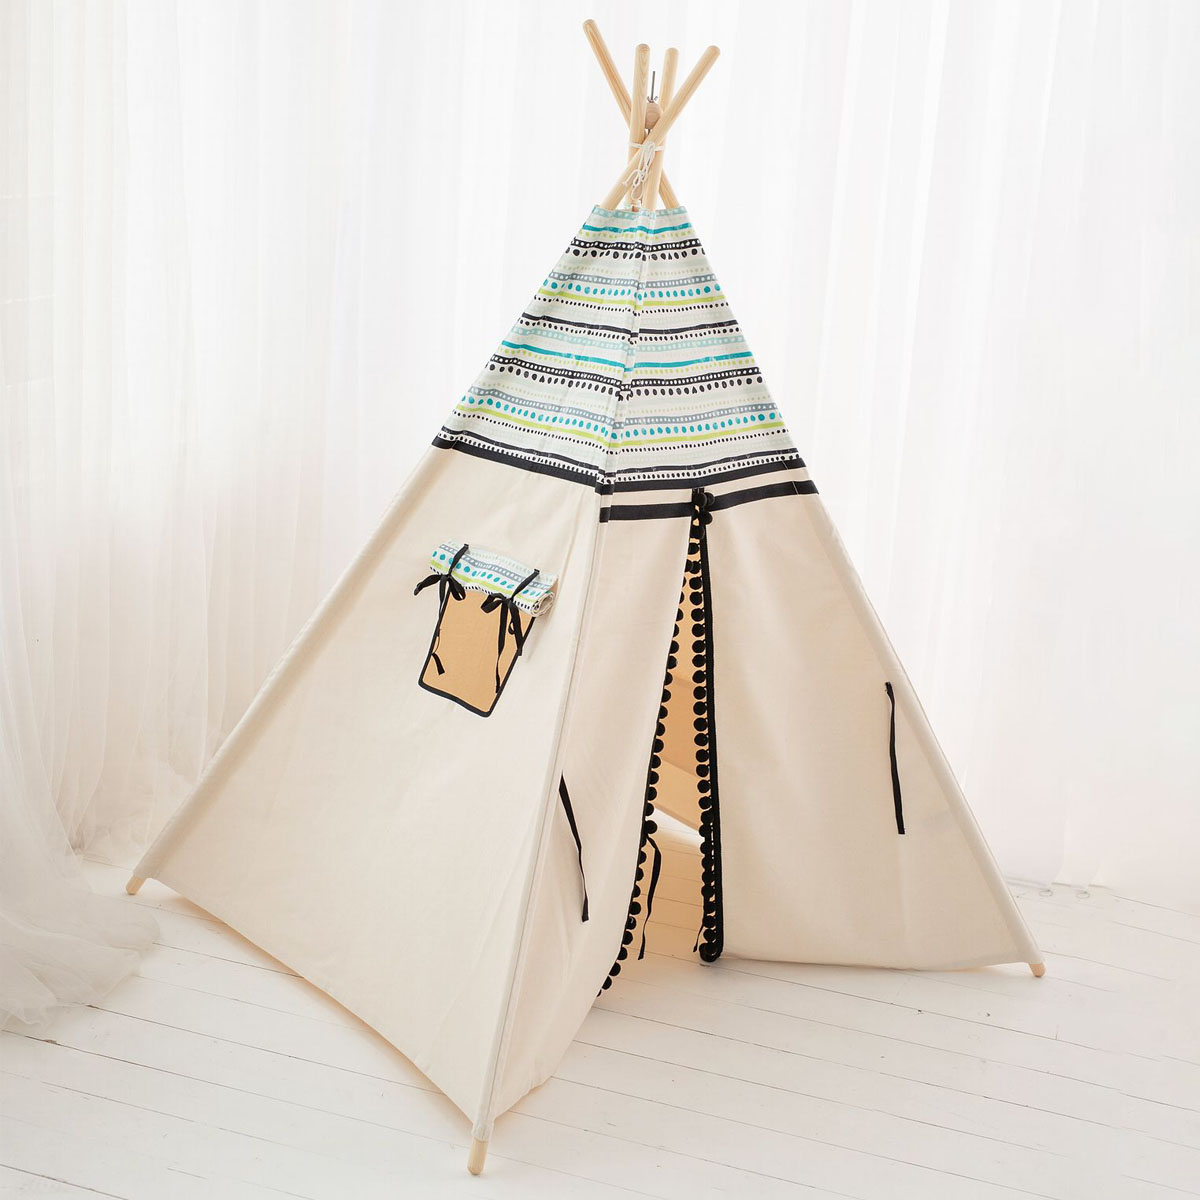 Tenda per bambini Tipi, teepee indiano - Cozy & Dozy